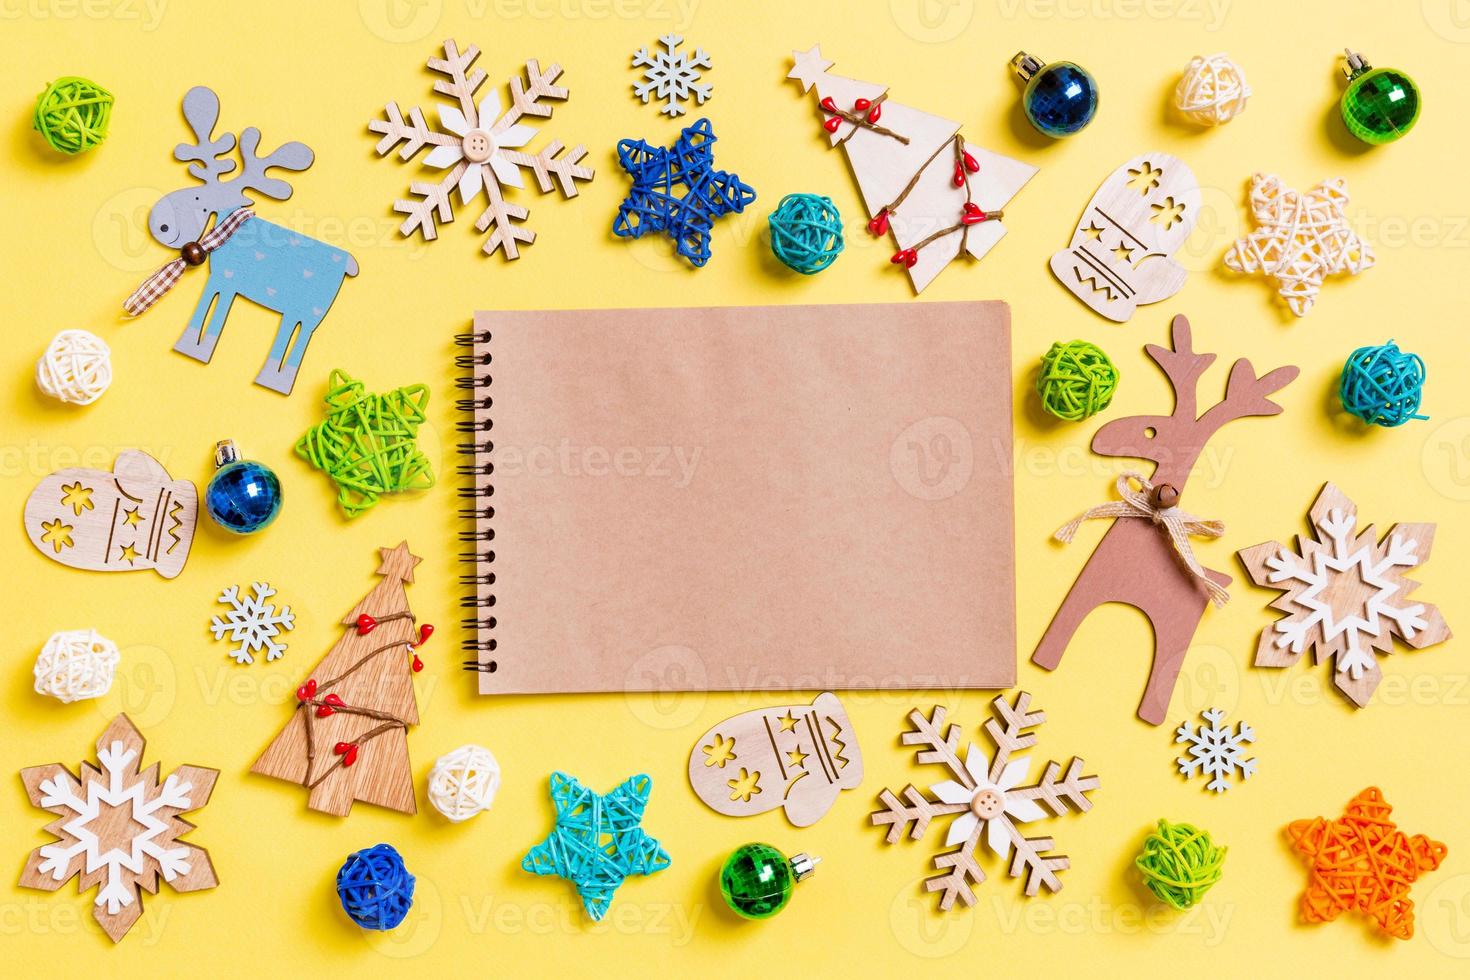 topp se av anteckningsbok på gul bakgrund med ny år leksaker och dekorationer. jul tid begrepp foto